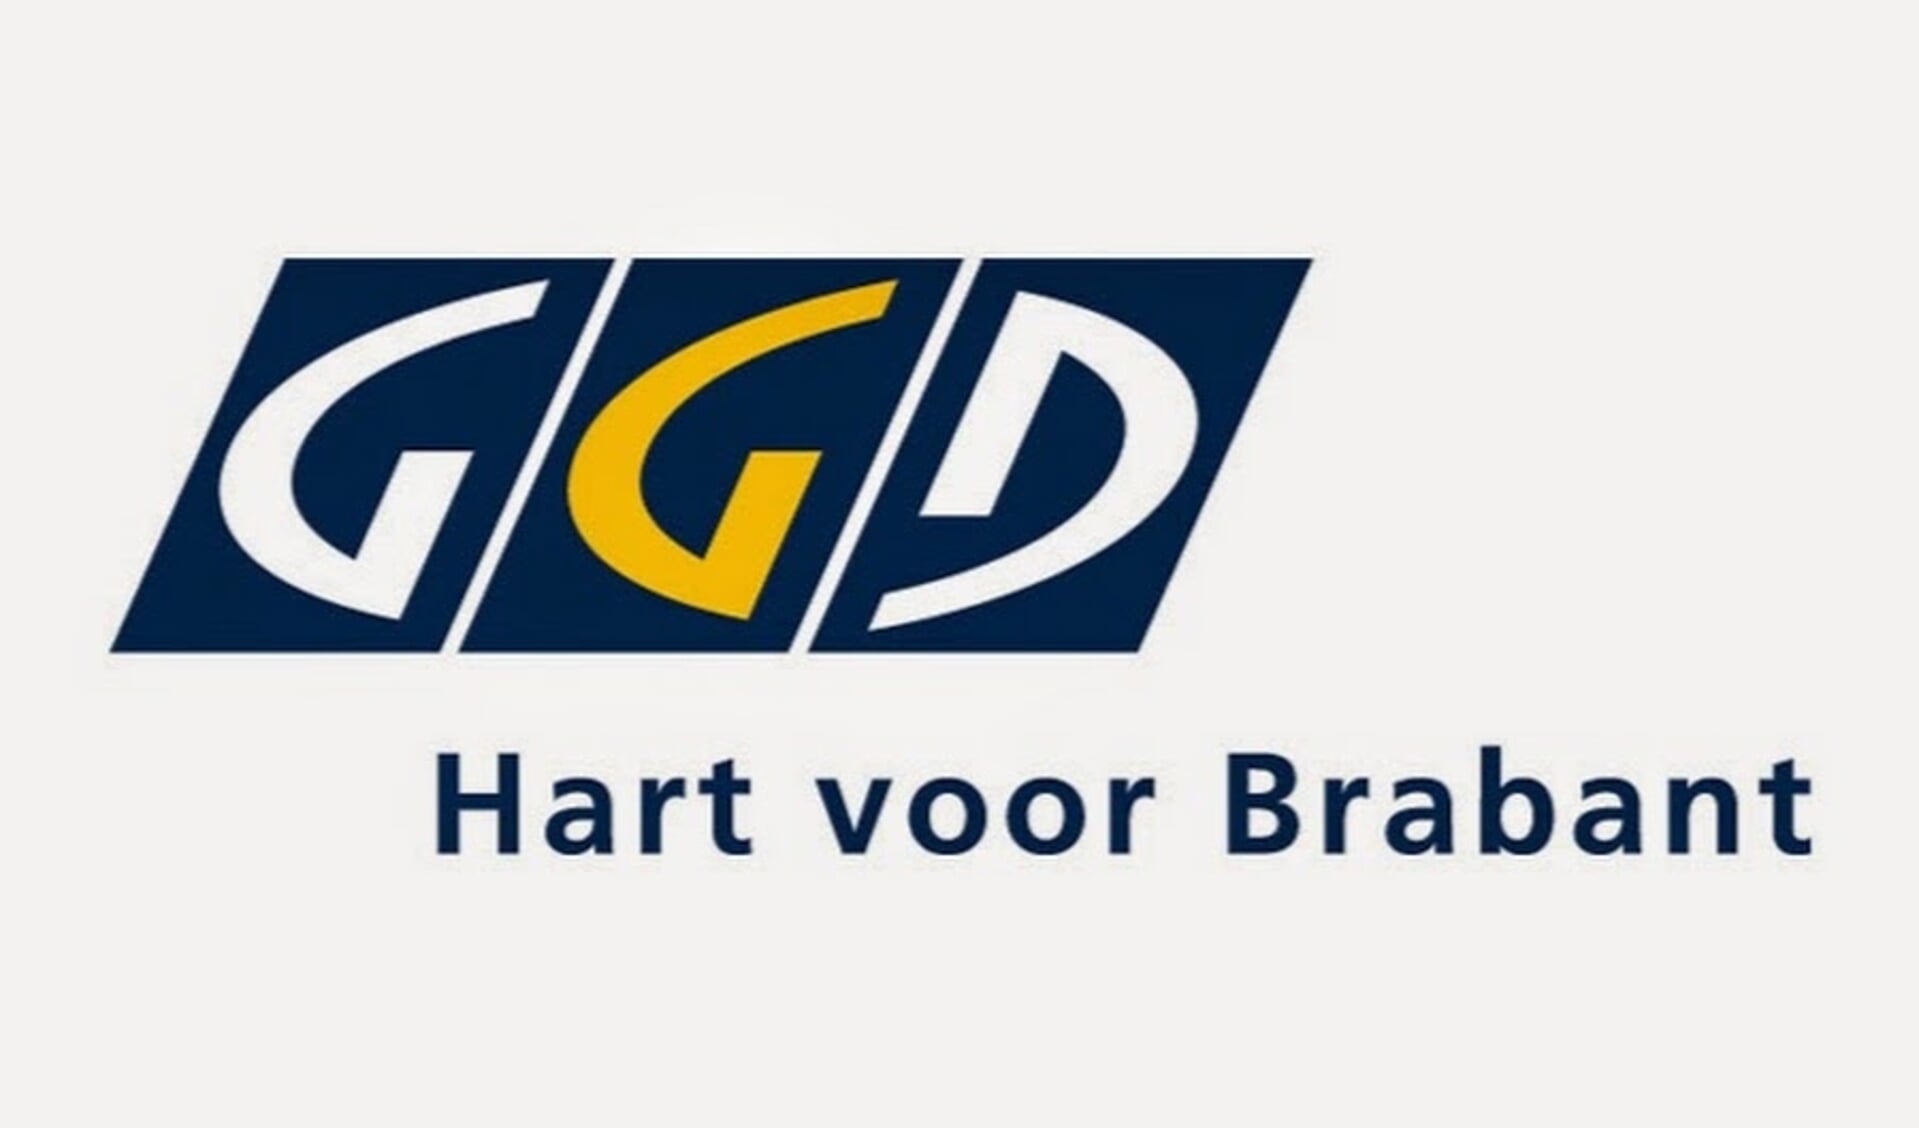 Bericht van GGD Hart voor Brabant.